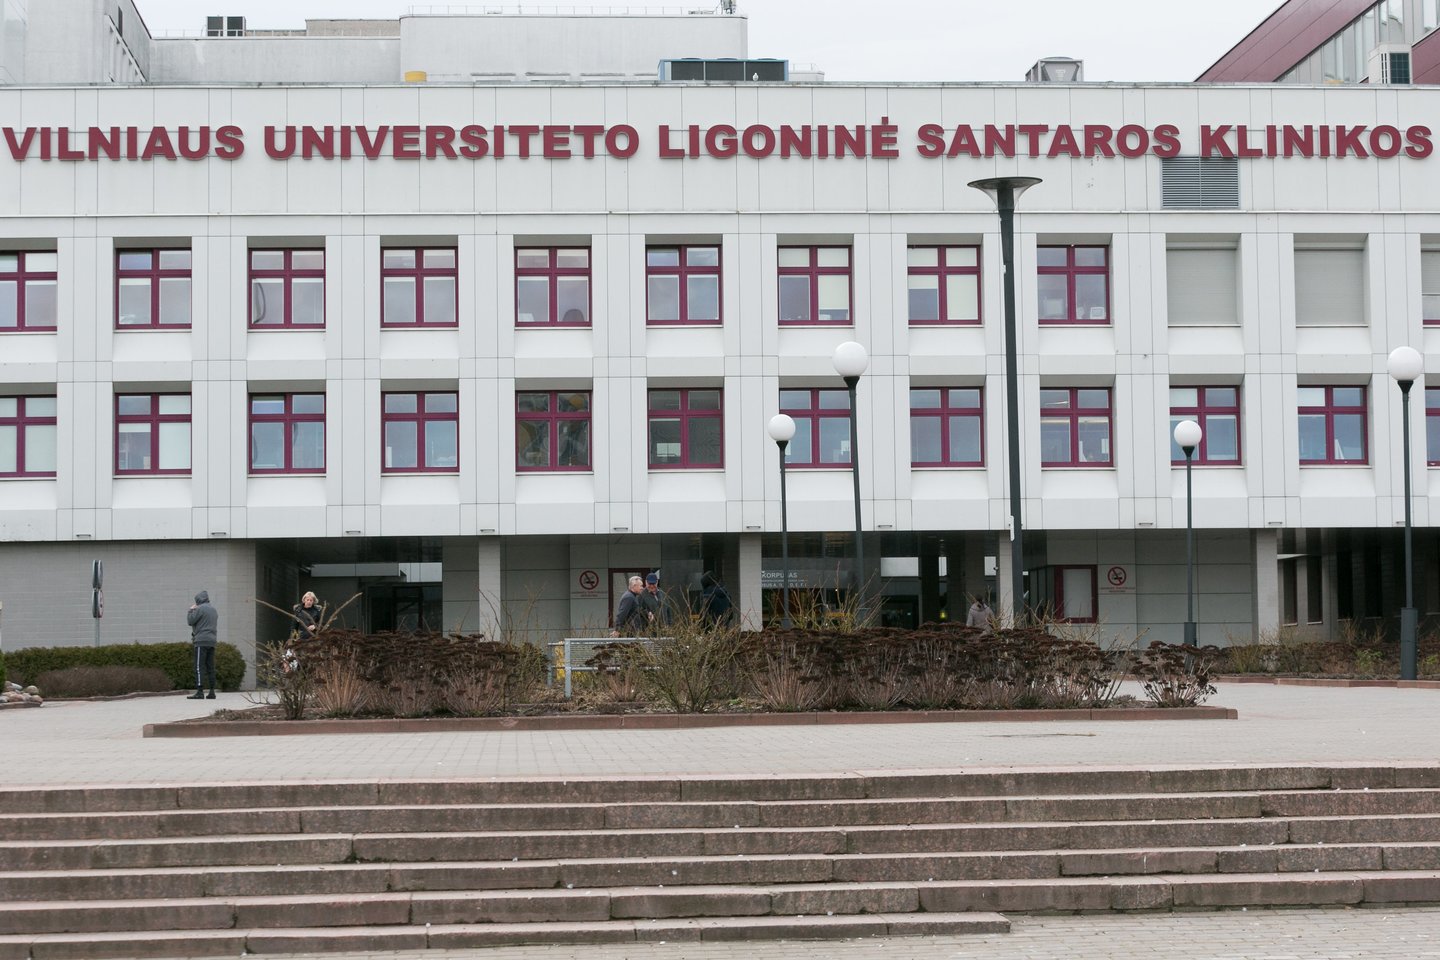 koronavirusas Vilniaus universiteto ligoninė Santaros klinikos<br>T.Bauro nuotr.